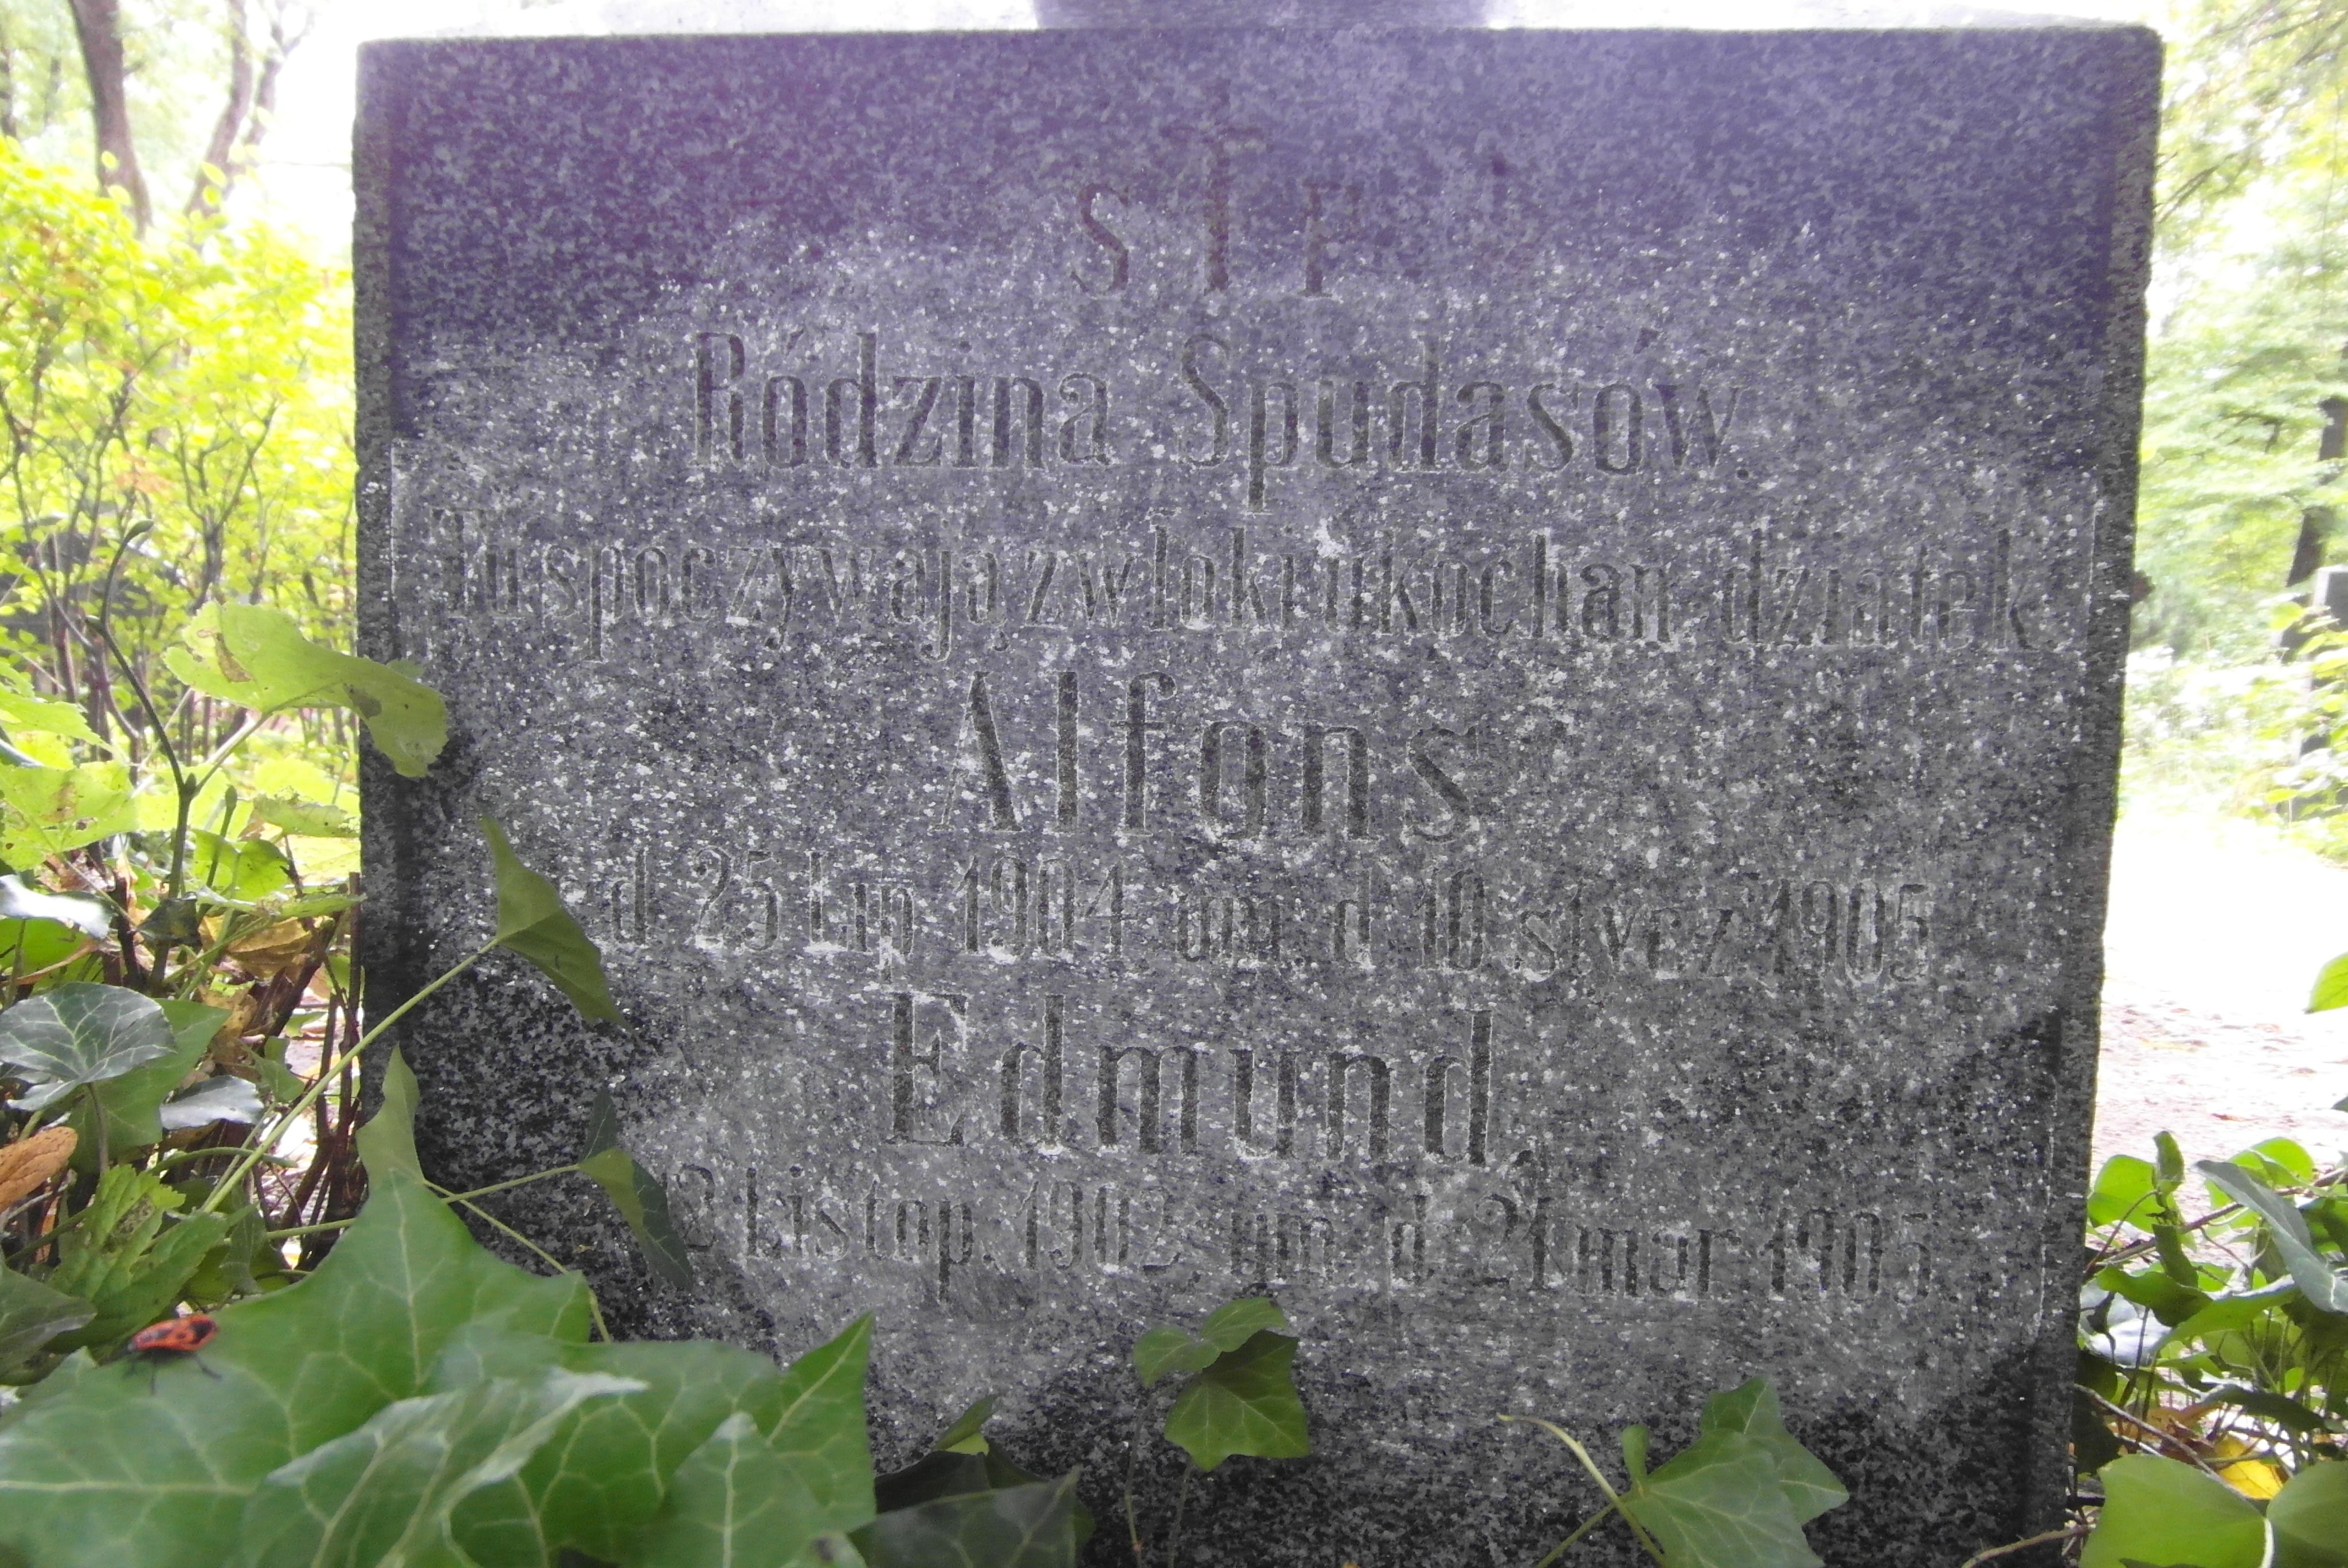 Napis z nagrobka rodziny Spudasow, cmentarz św. Michała w Rydze, stan z 2021 r.